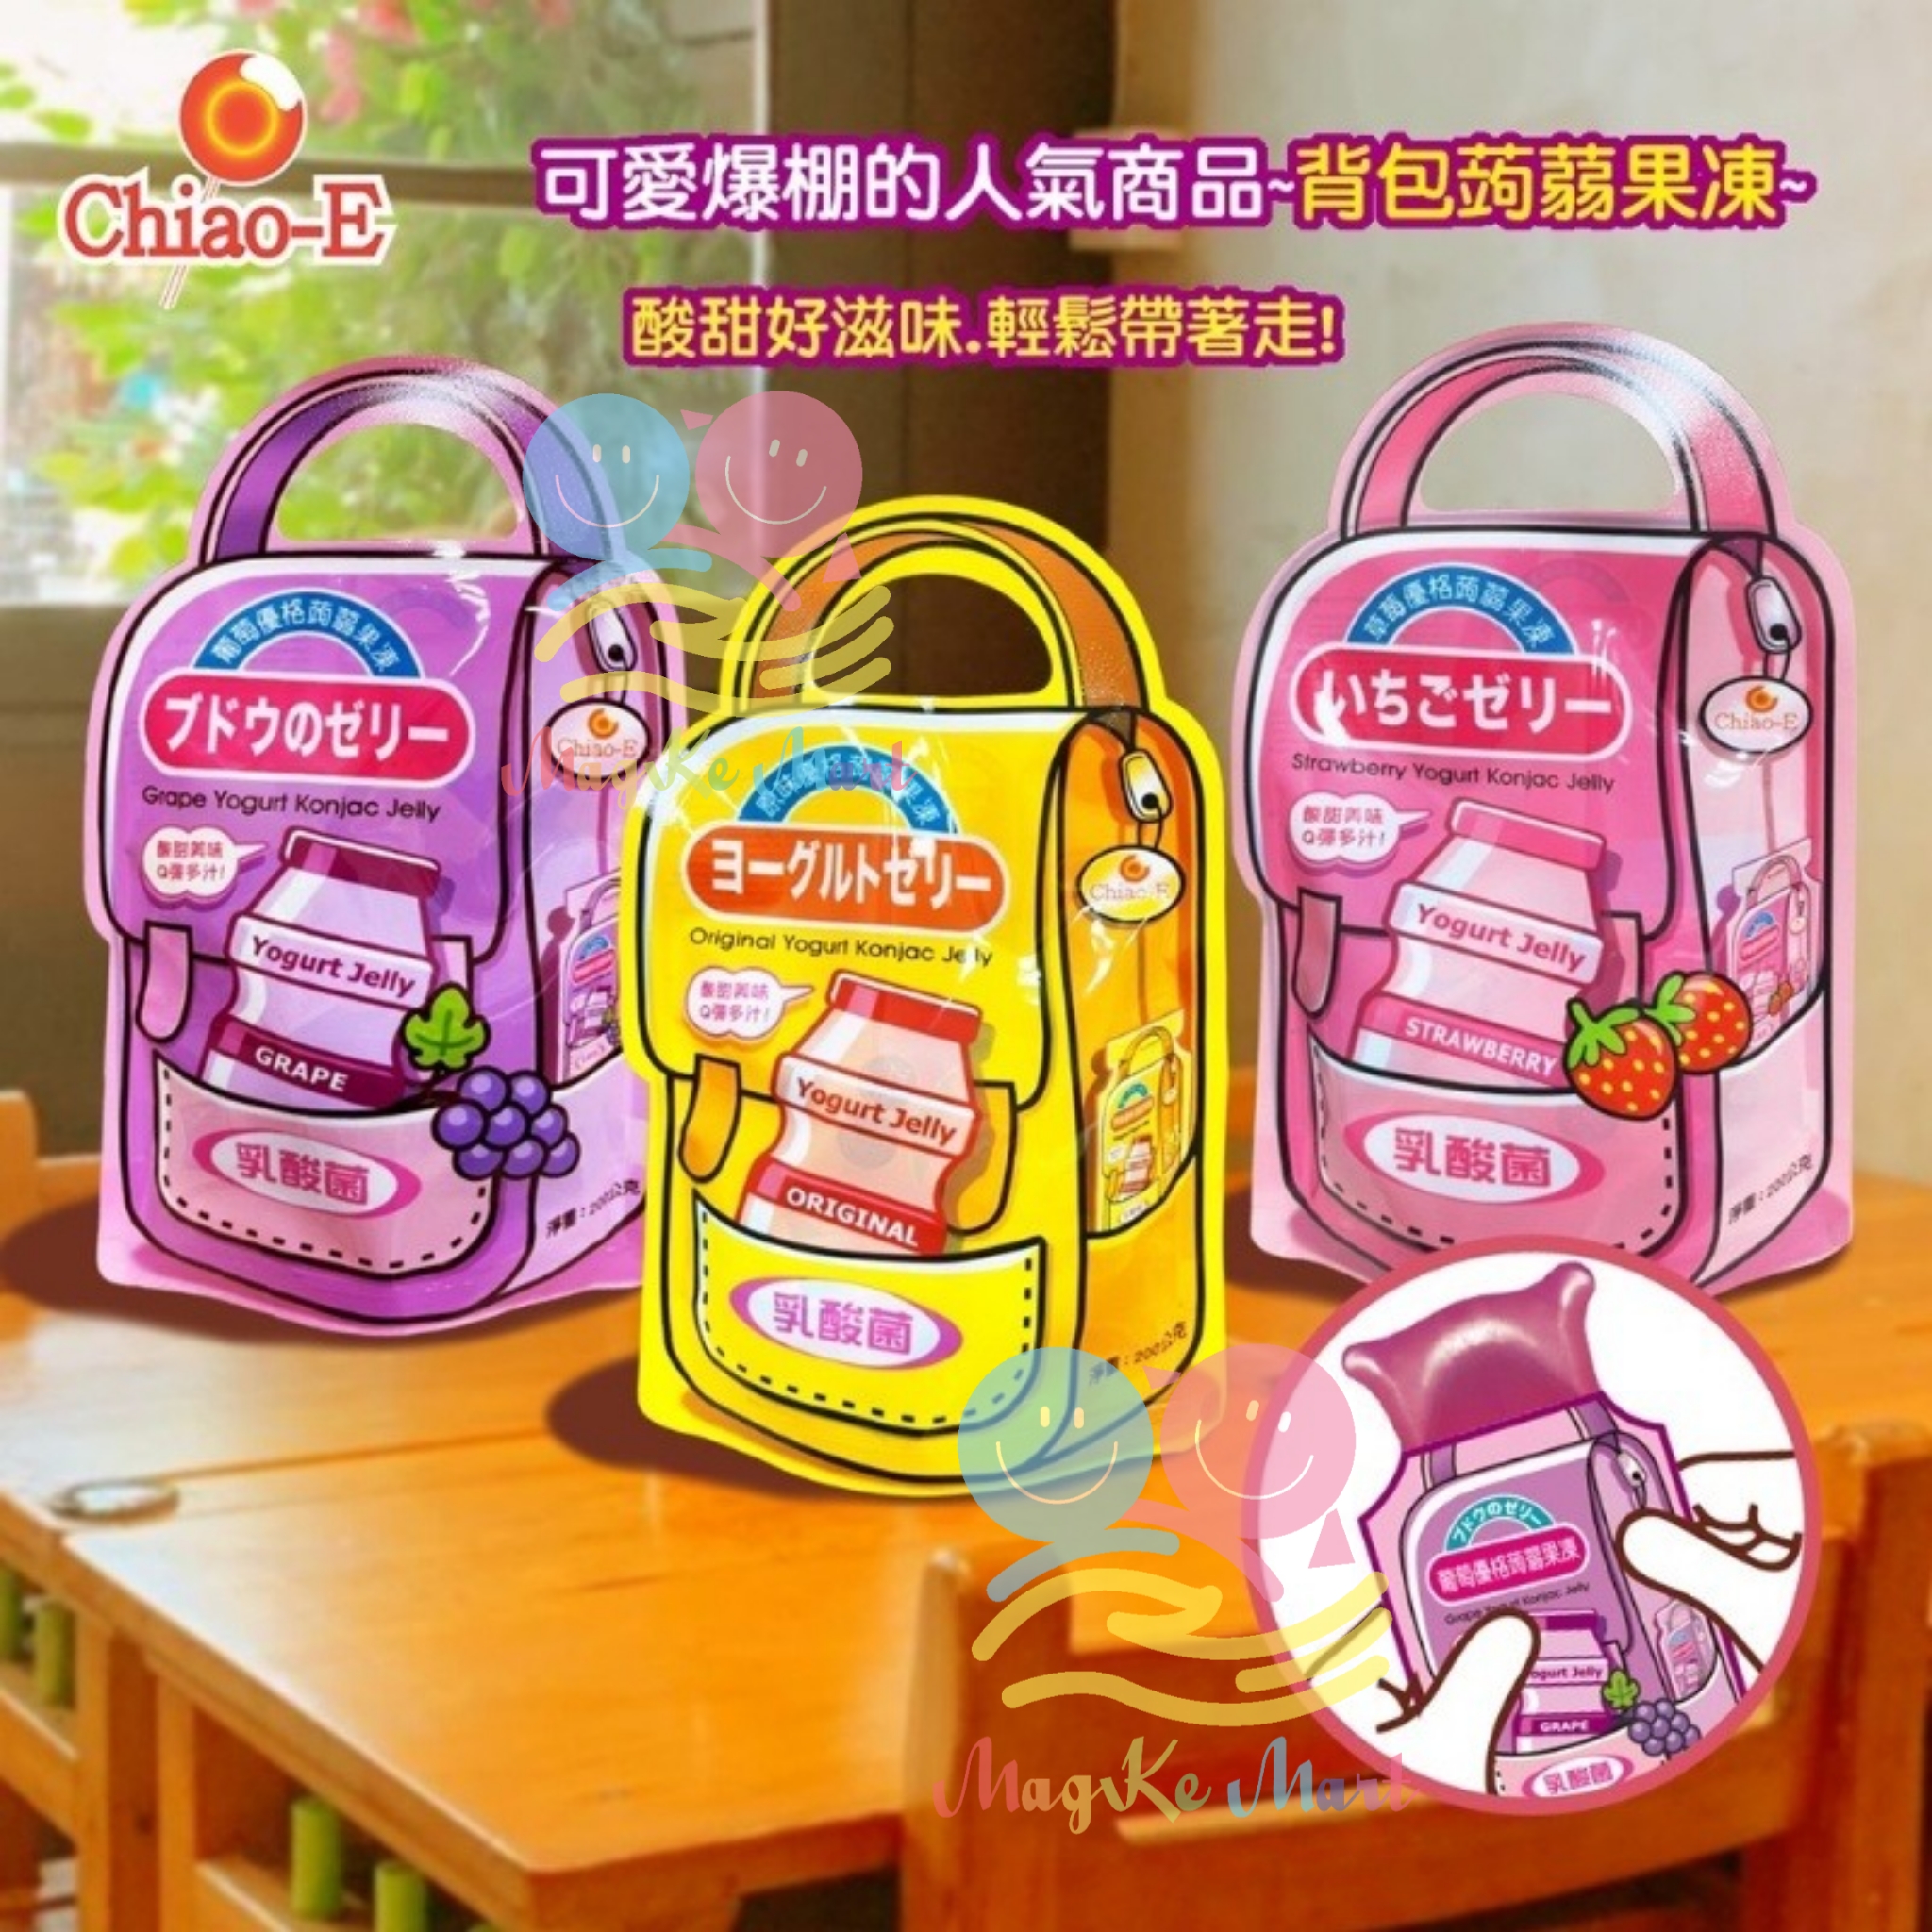 台灣 Chiao—E 書包造型優格蒟蒻果凍 200g (1套2袋)